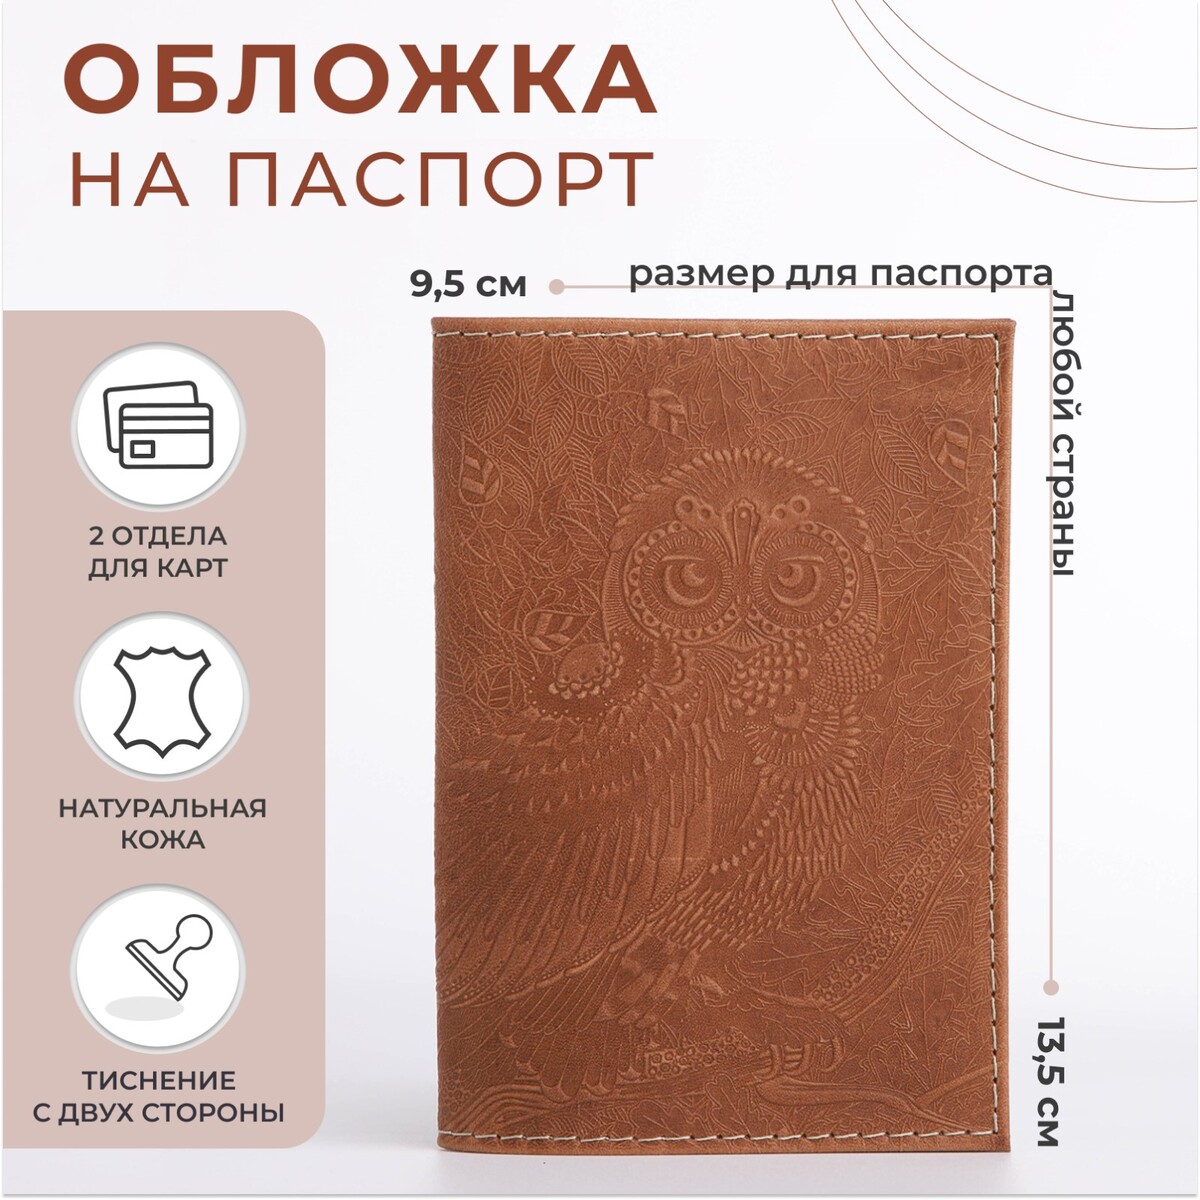 Обложка для паспорта, цвет темно-бежевый обложка для паспорта